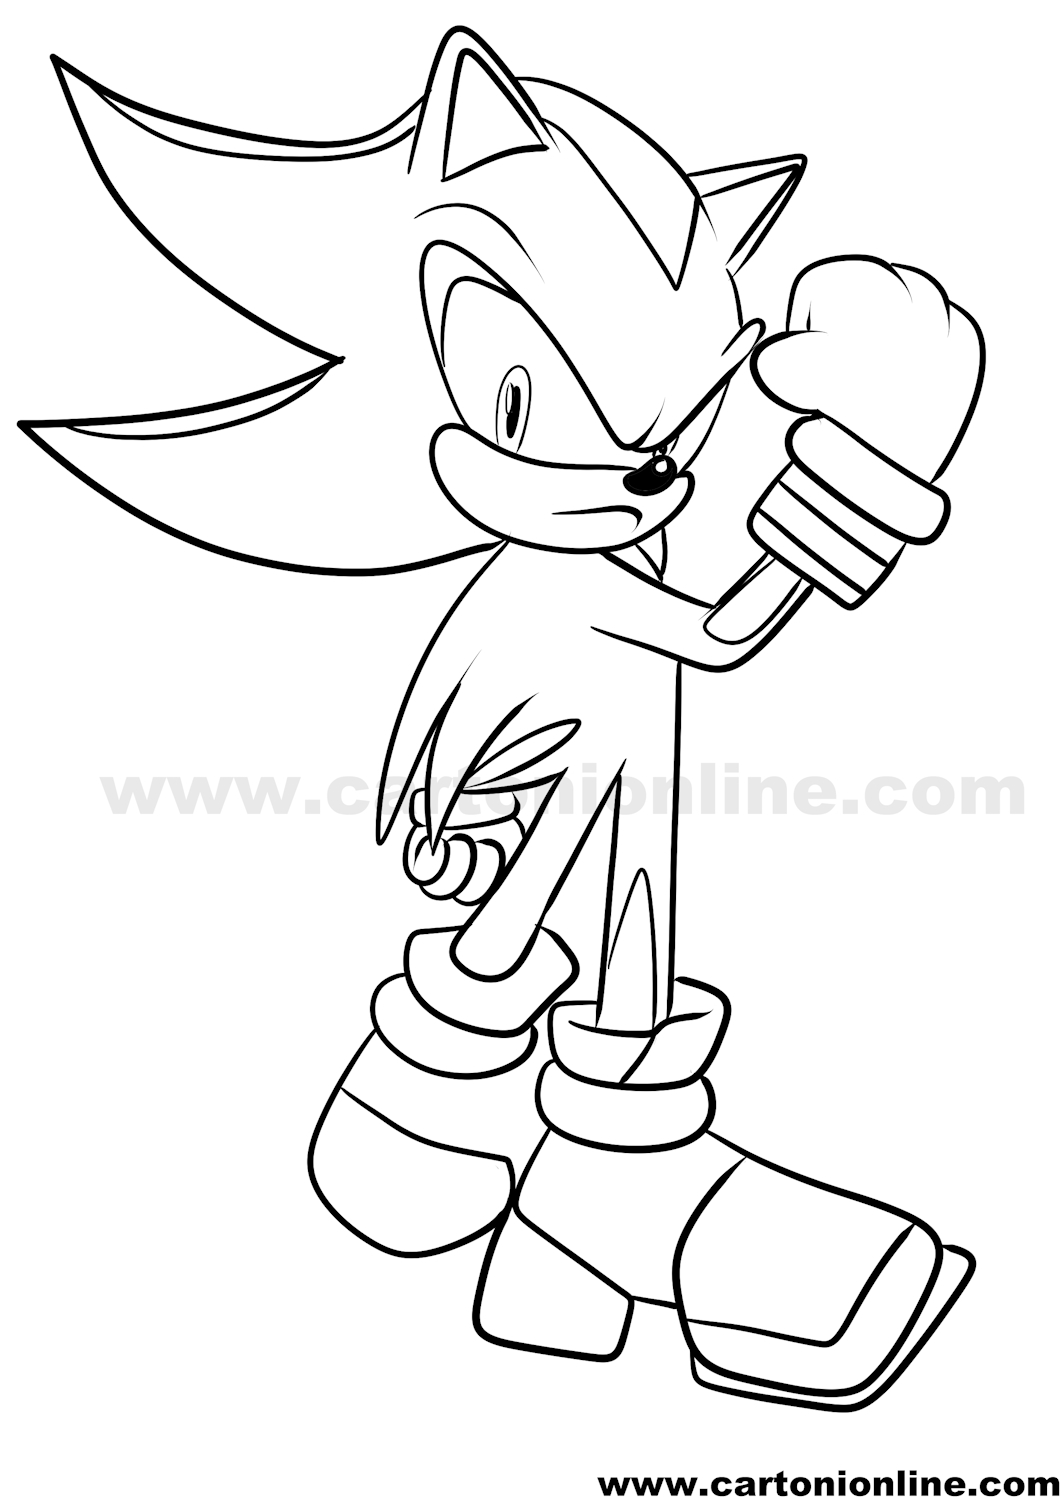 Disegno di Shadow 04 di Sonic da stampare e colorare